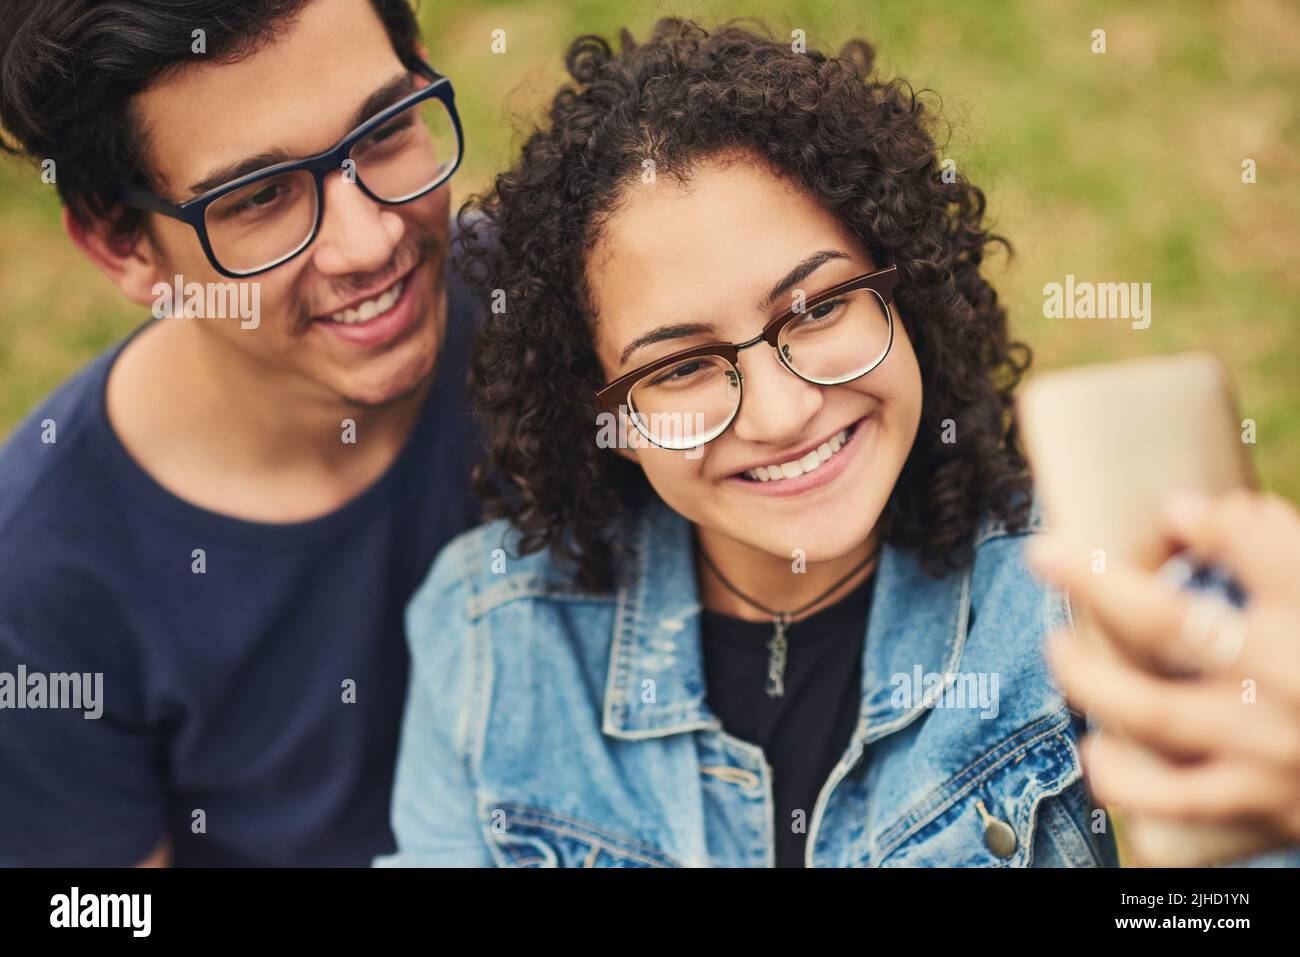 Se avete una giornata fantastica, sorridi per il selfie. Una coppia adolescente che prende un selfie all'aperto. Foto Stock